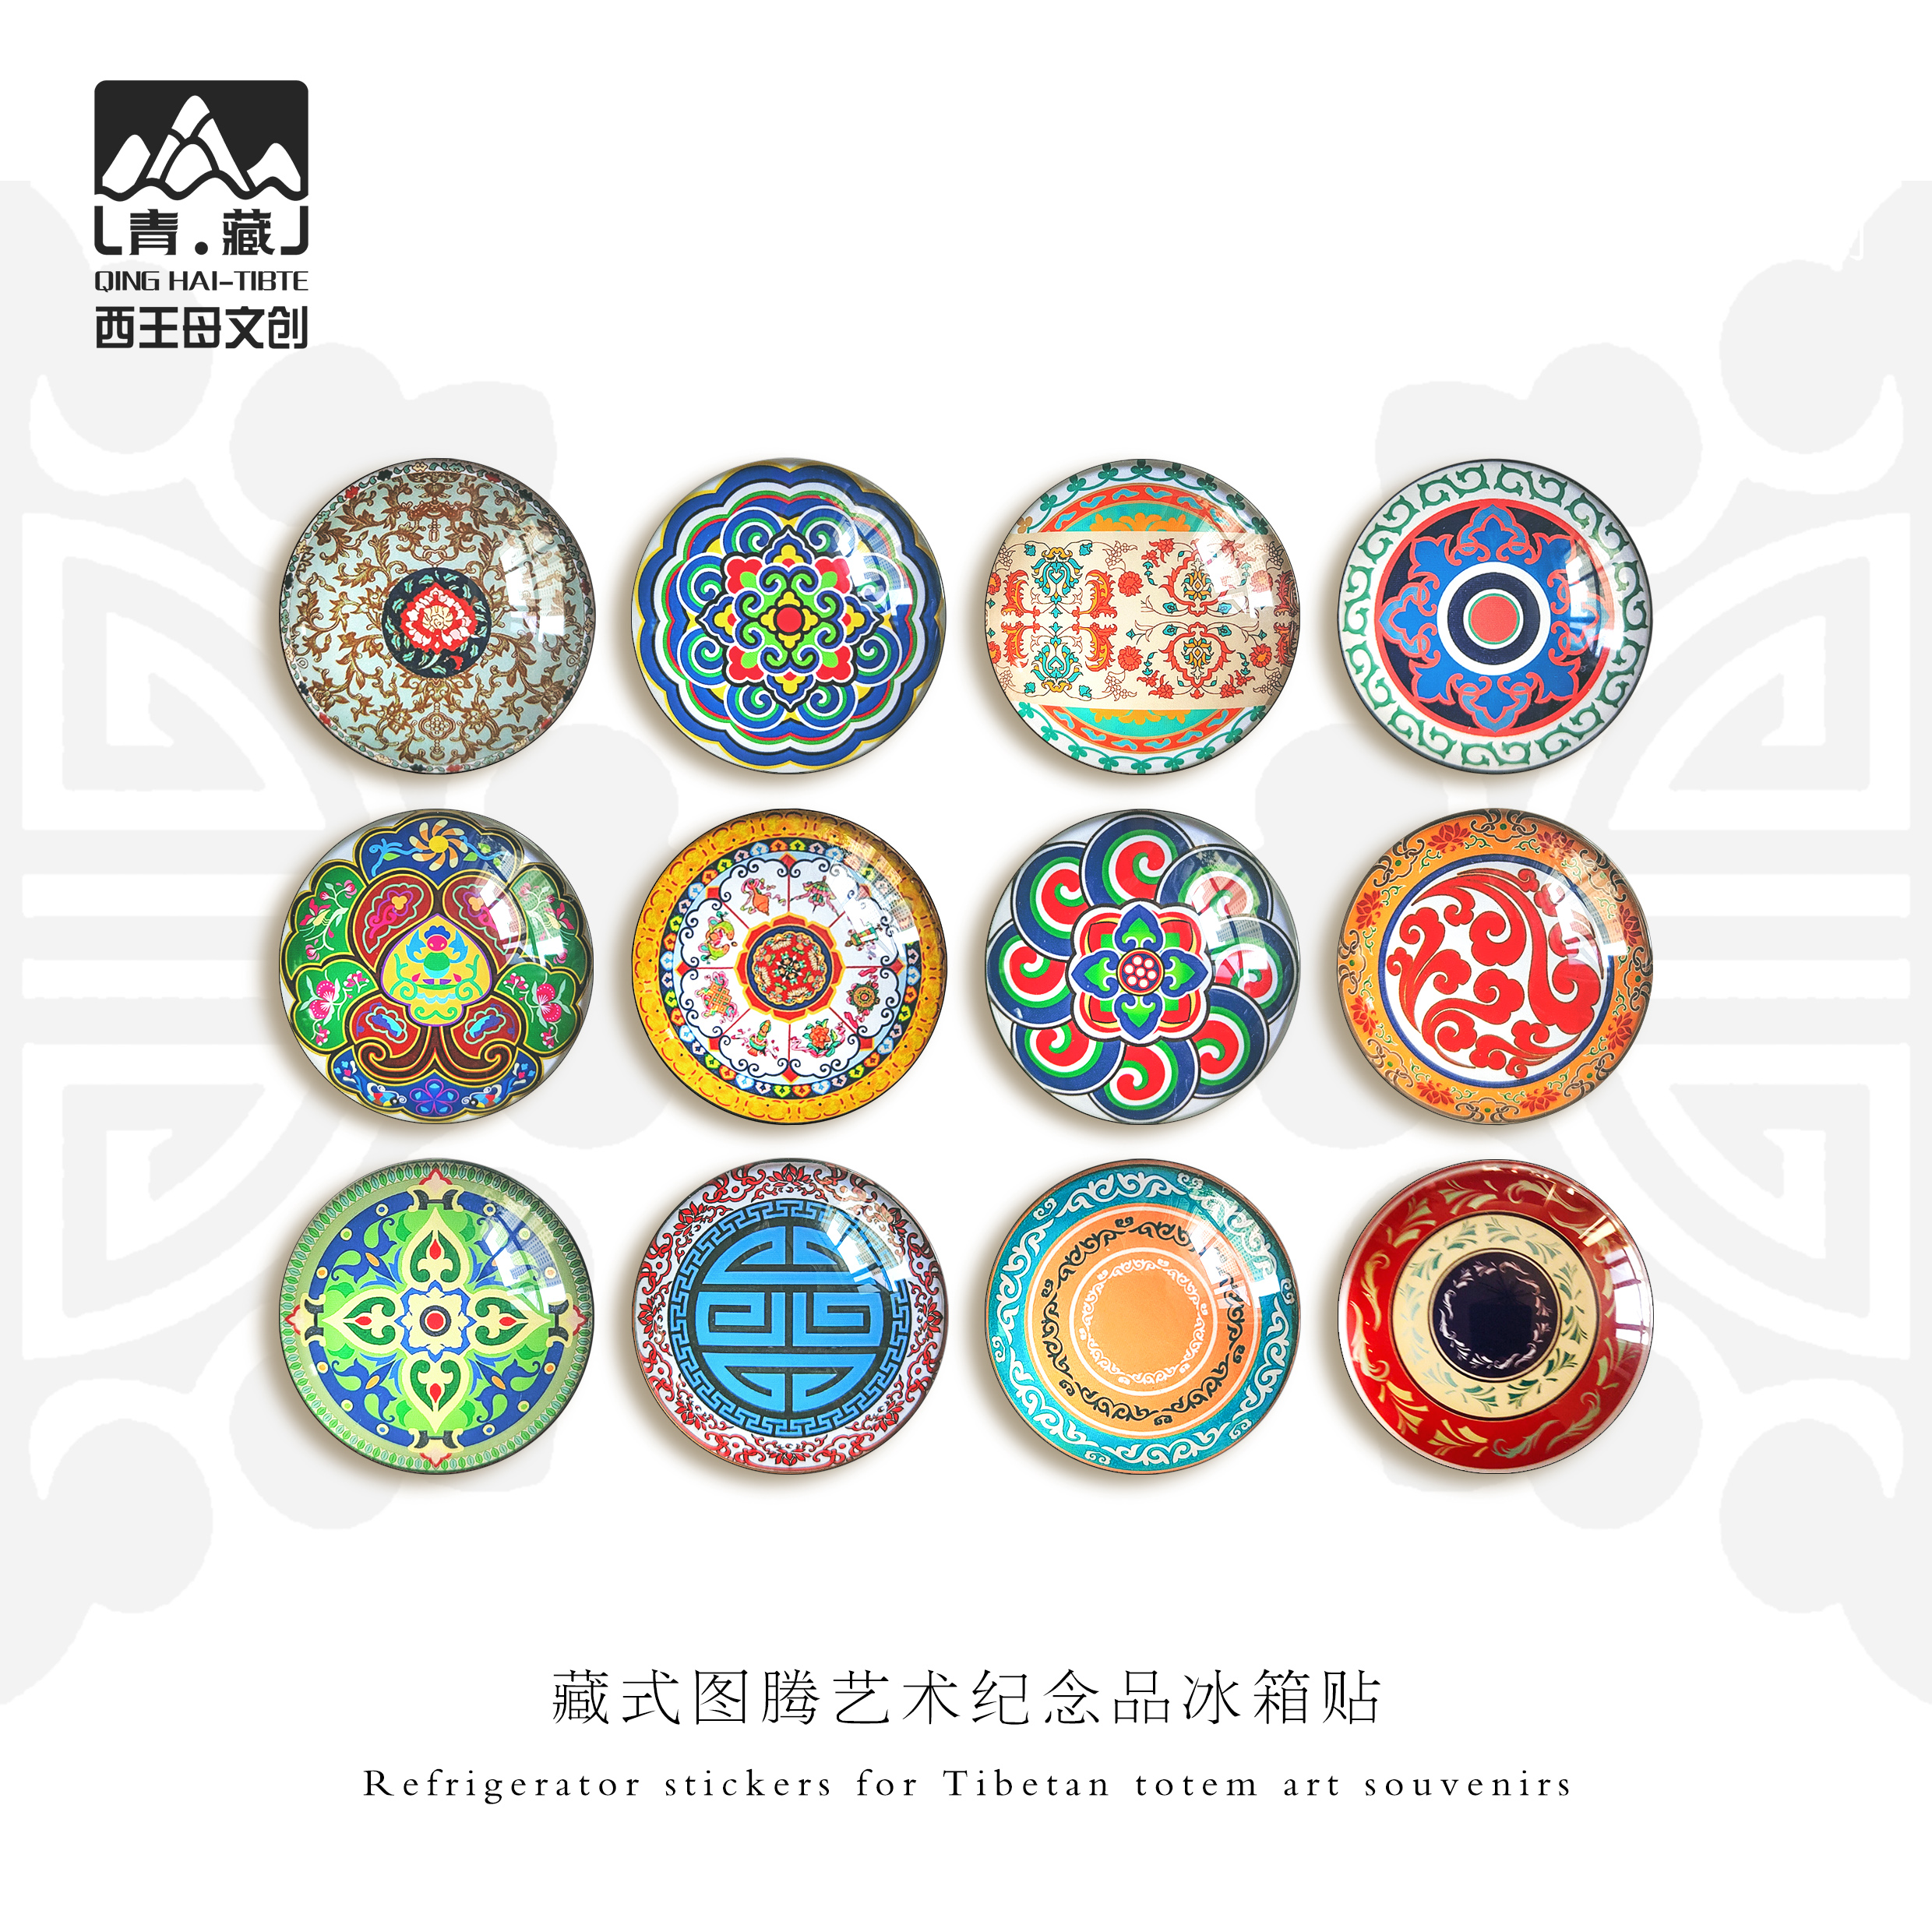 藏式壁画塔尔寺瞿昙唐卡冰箱贴青海文创艺术纪念品伴手礼物博物馆